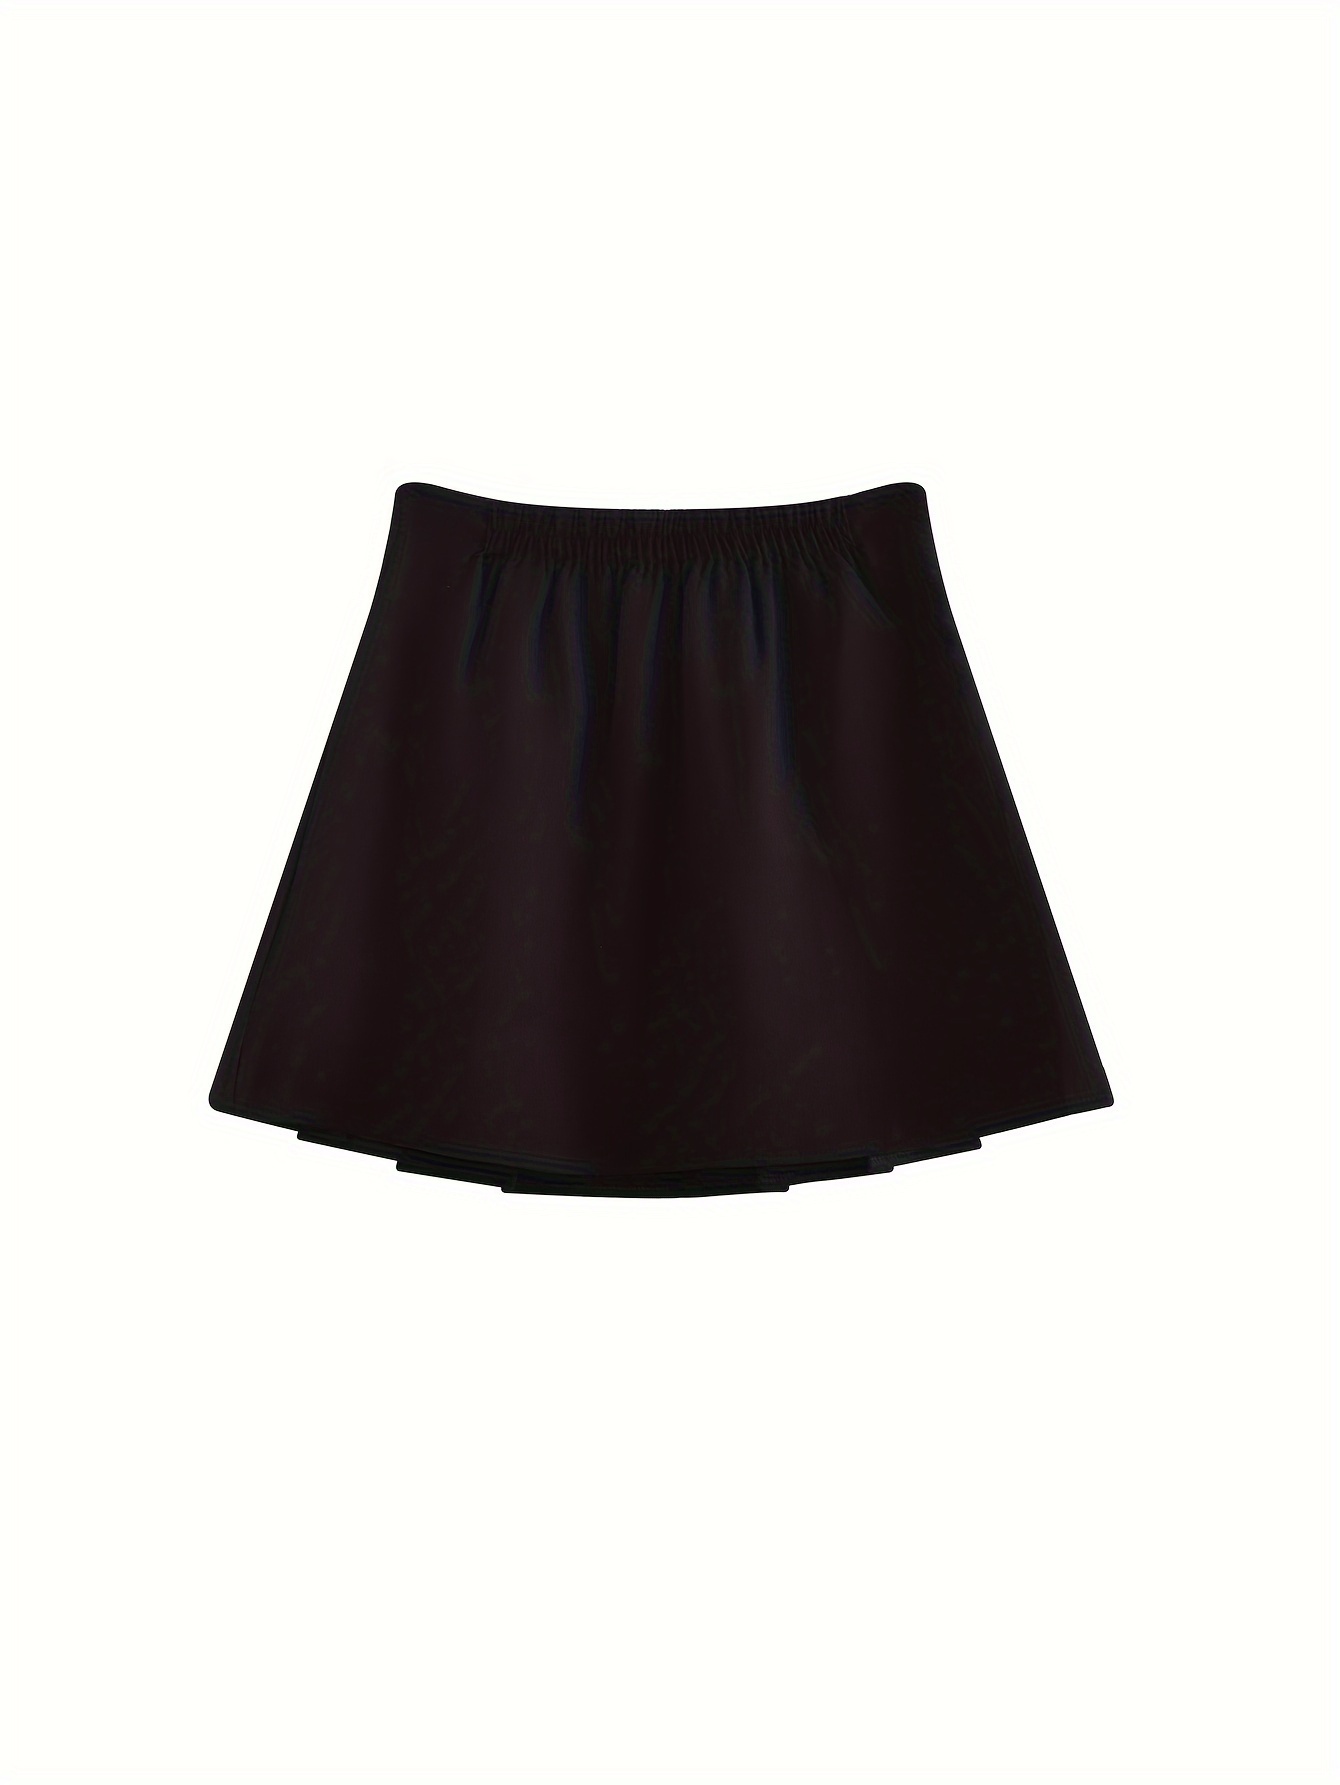 High Waist Tucked Skirt Solid Color Flare Mini Skirt Women's